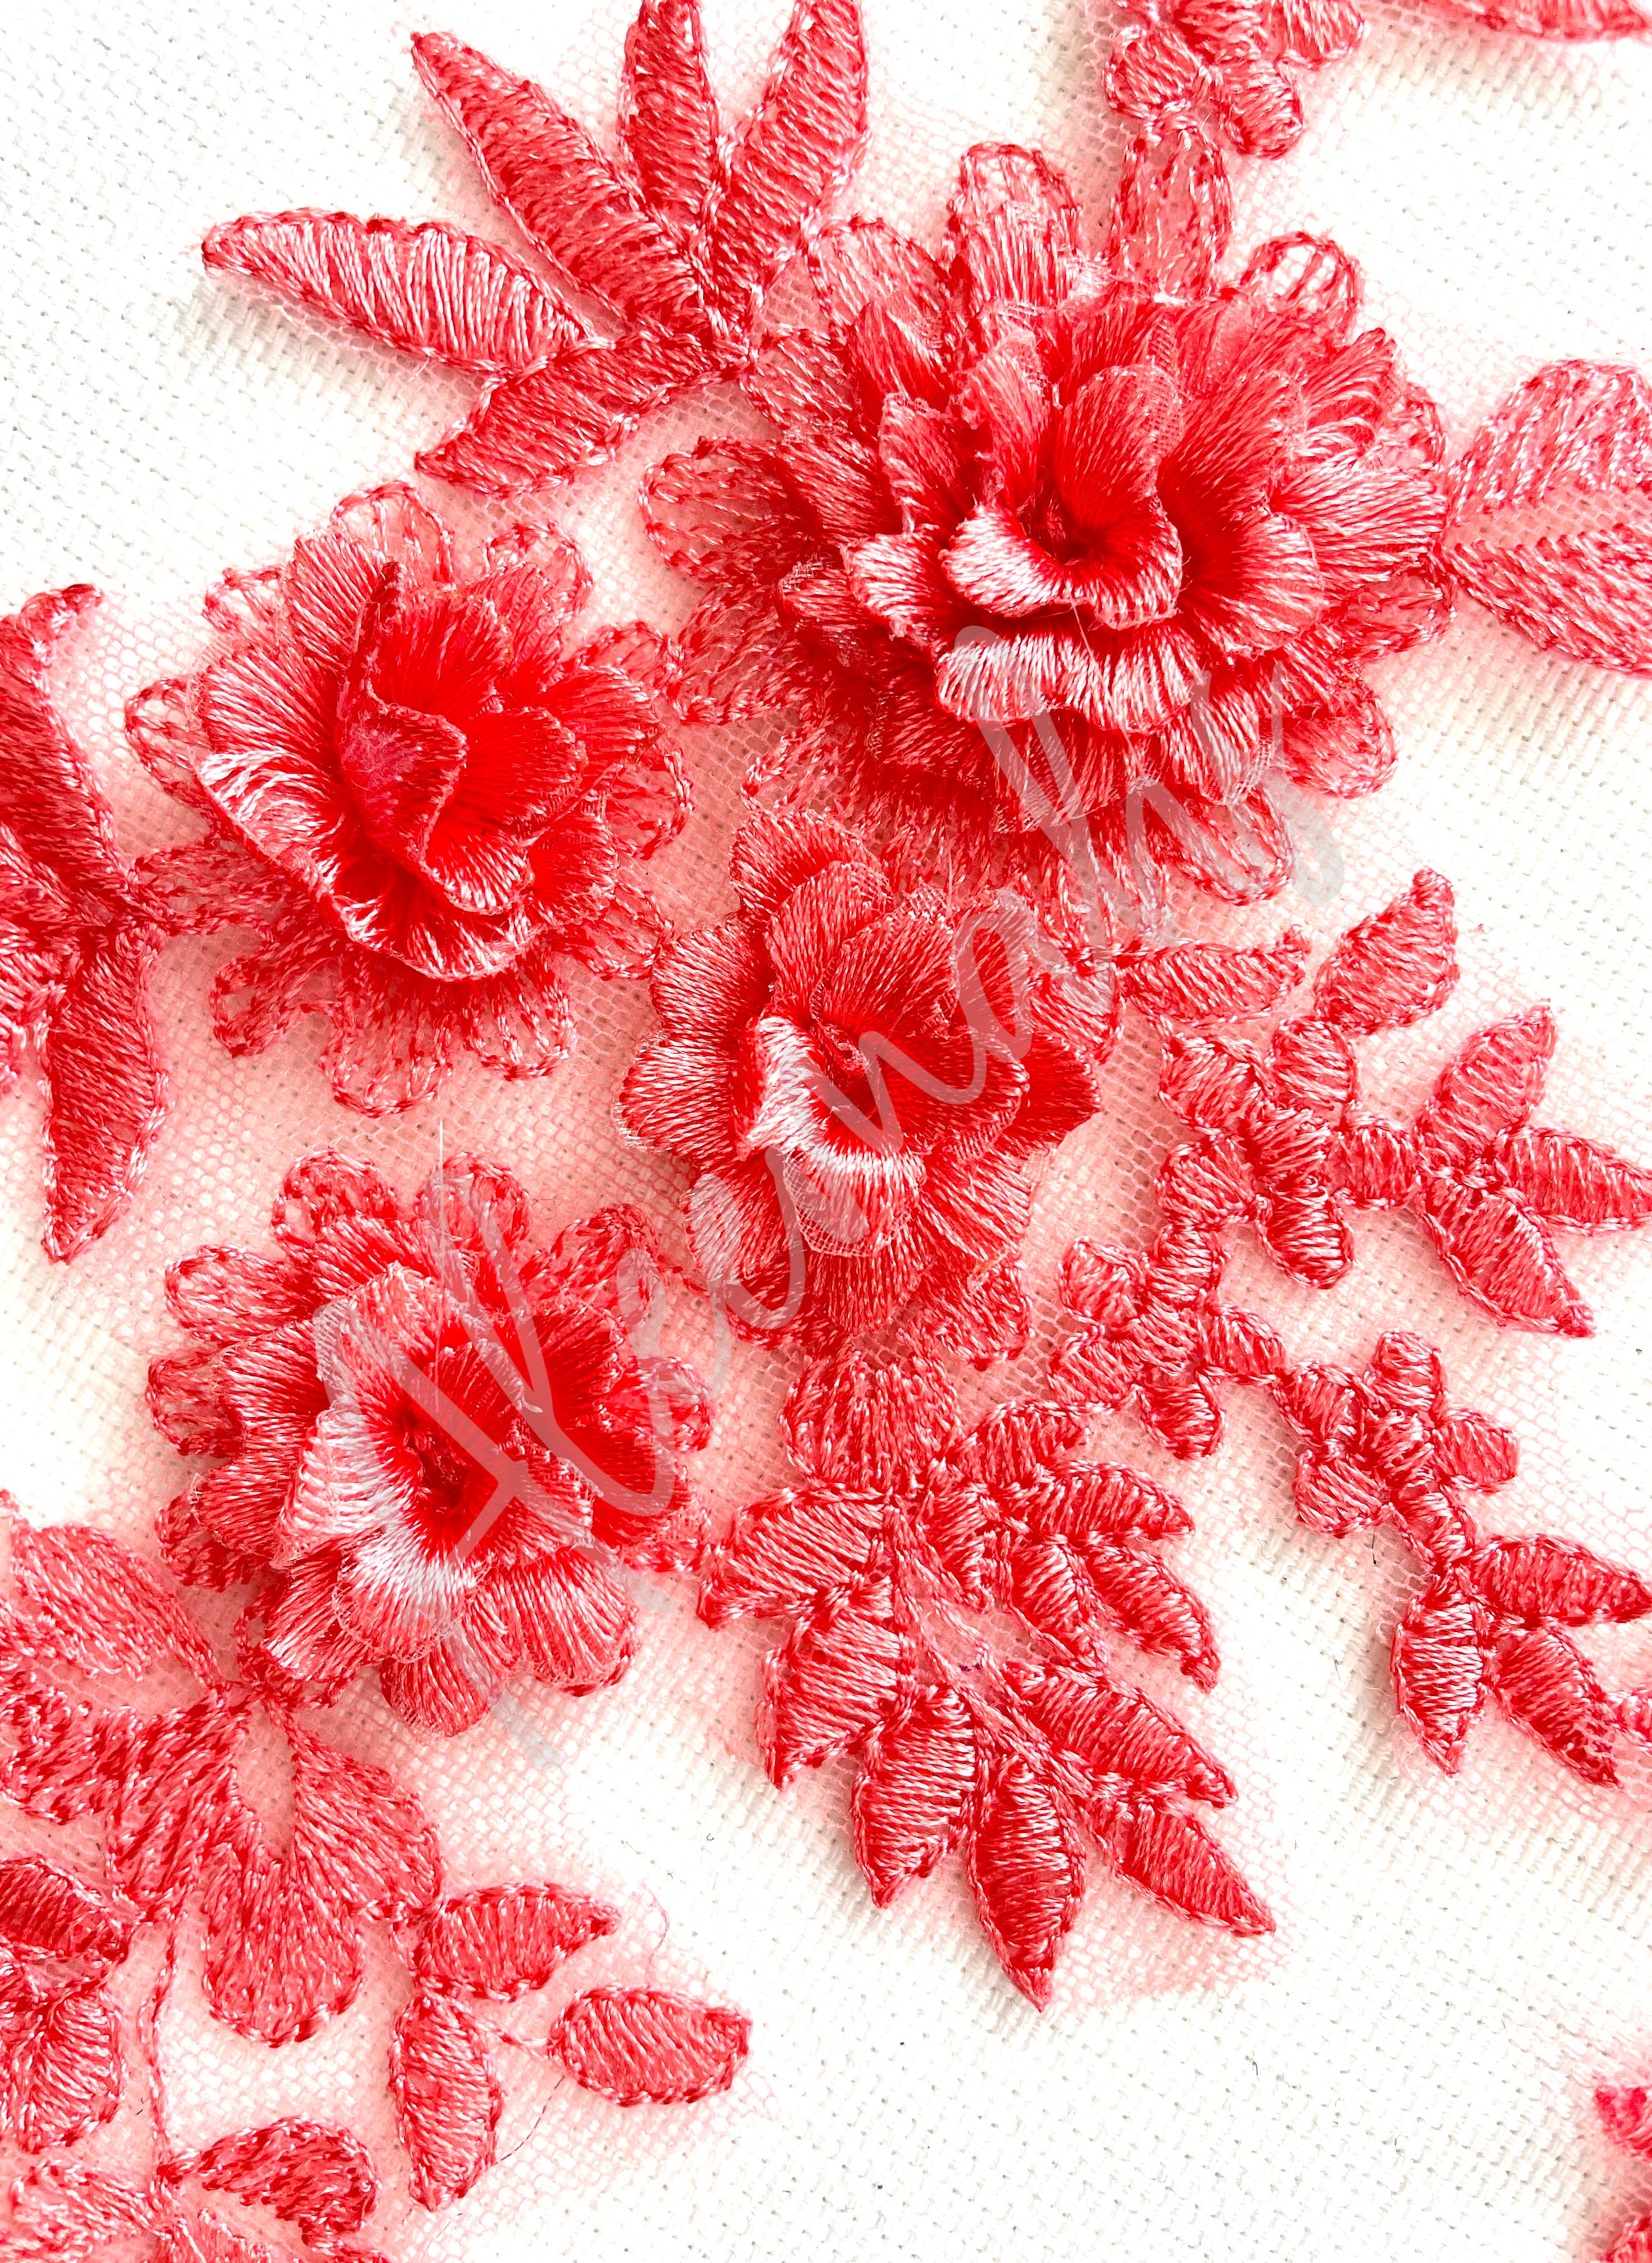 LA-033: 3D floral lace applique pair: Coral